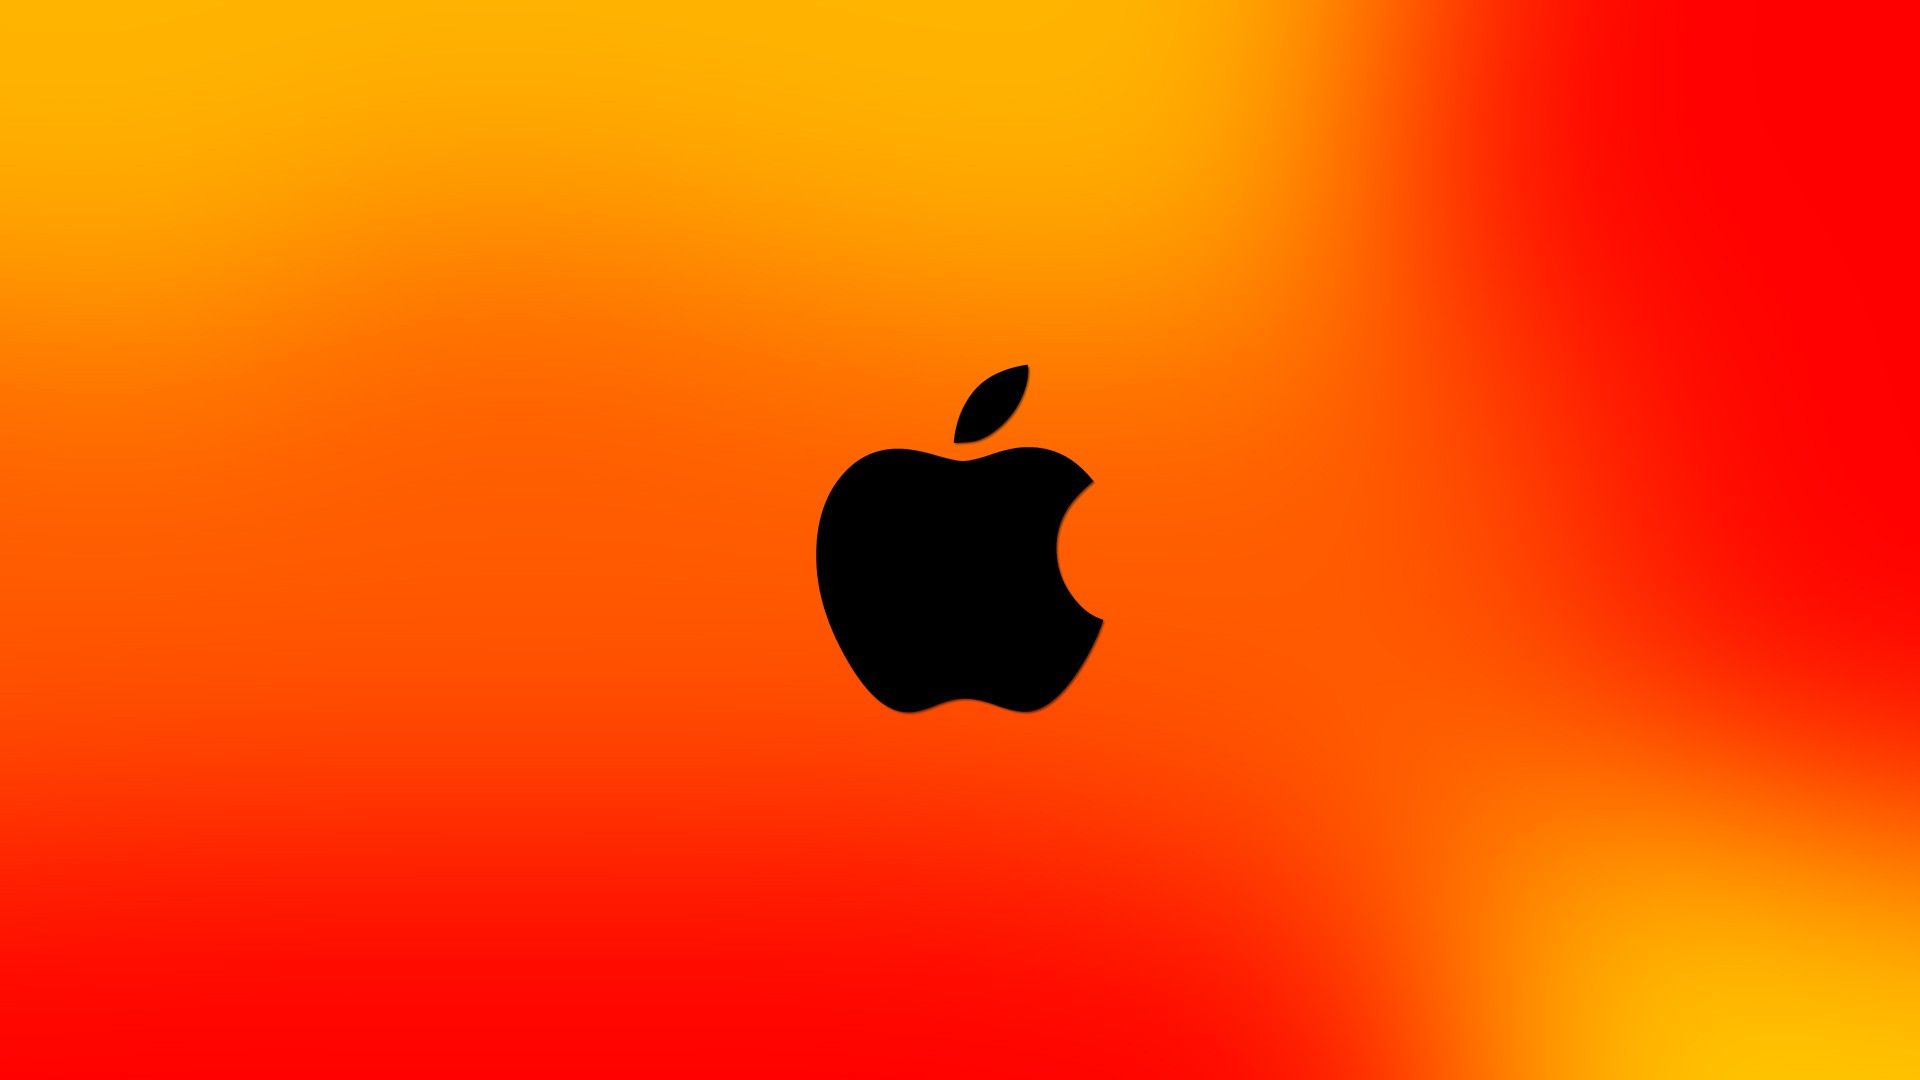 Apple Logo Hd Wallpapers - Apple Laptop Wallpaper Hd , HD Wallpaper & Backgrounds